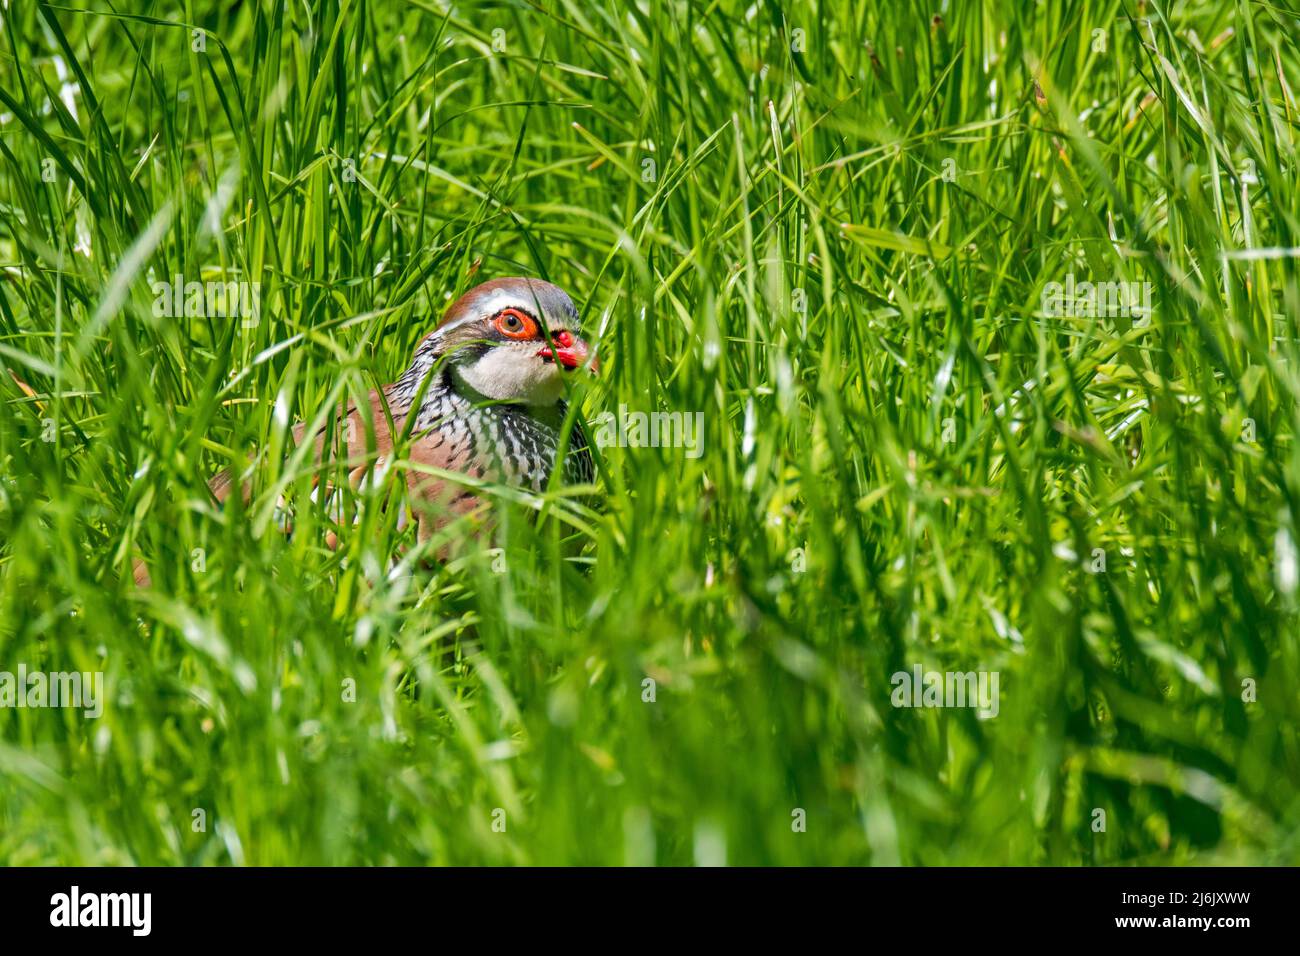 Perdiz de patas rojas / perdiz francesa (Alectoris rufa) escondida en hierba alta en prados / praderas Foto de stock